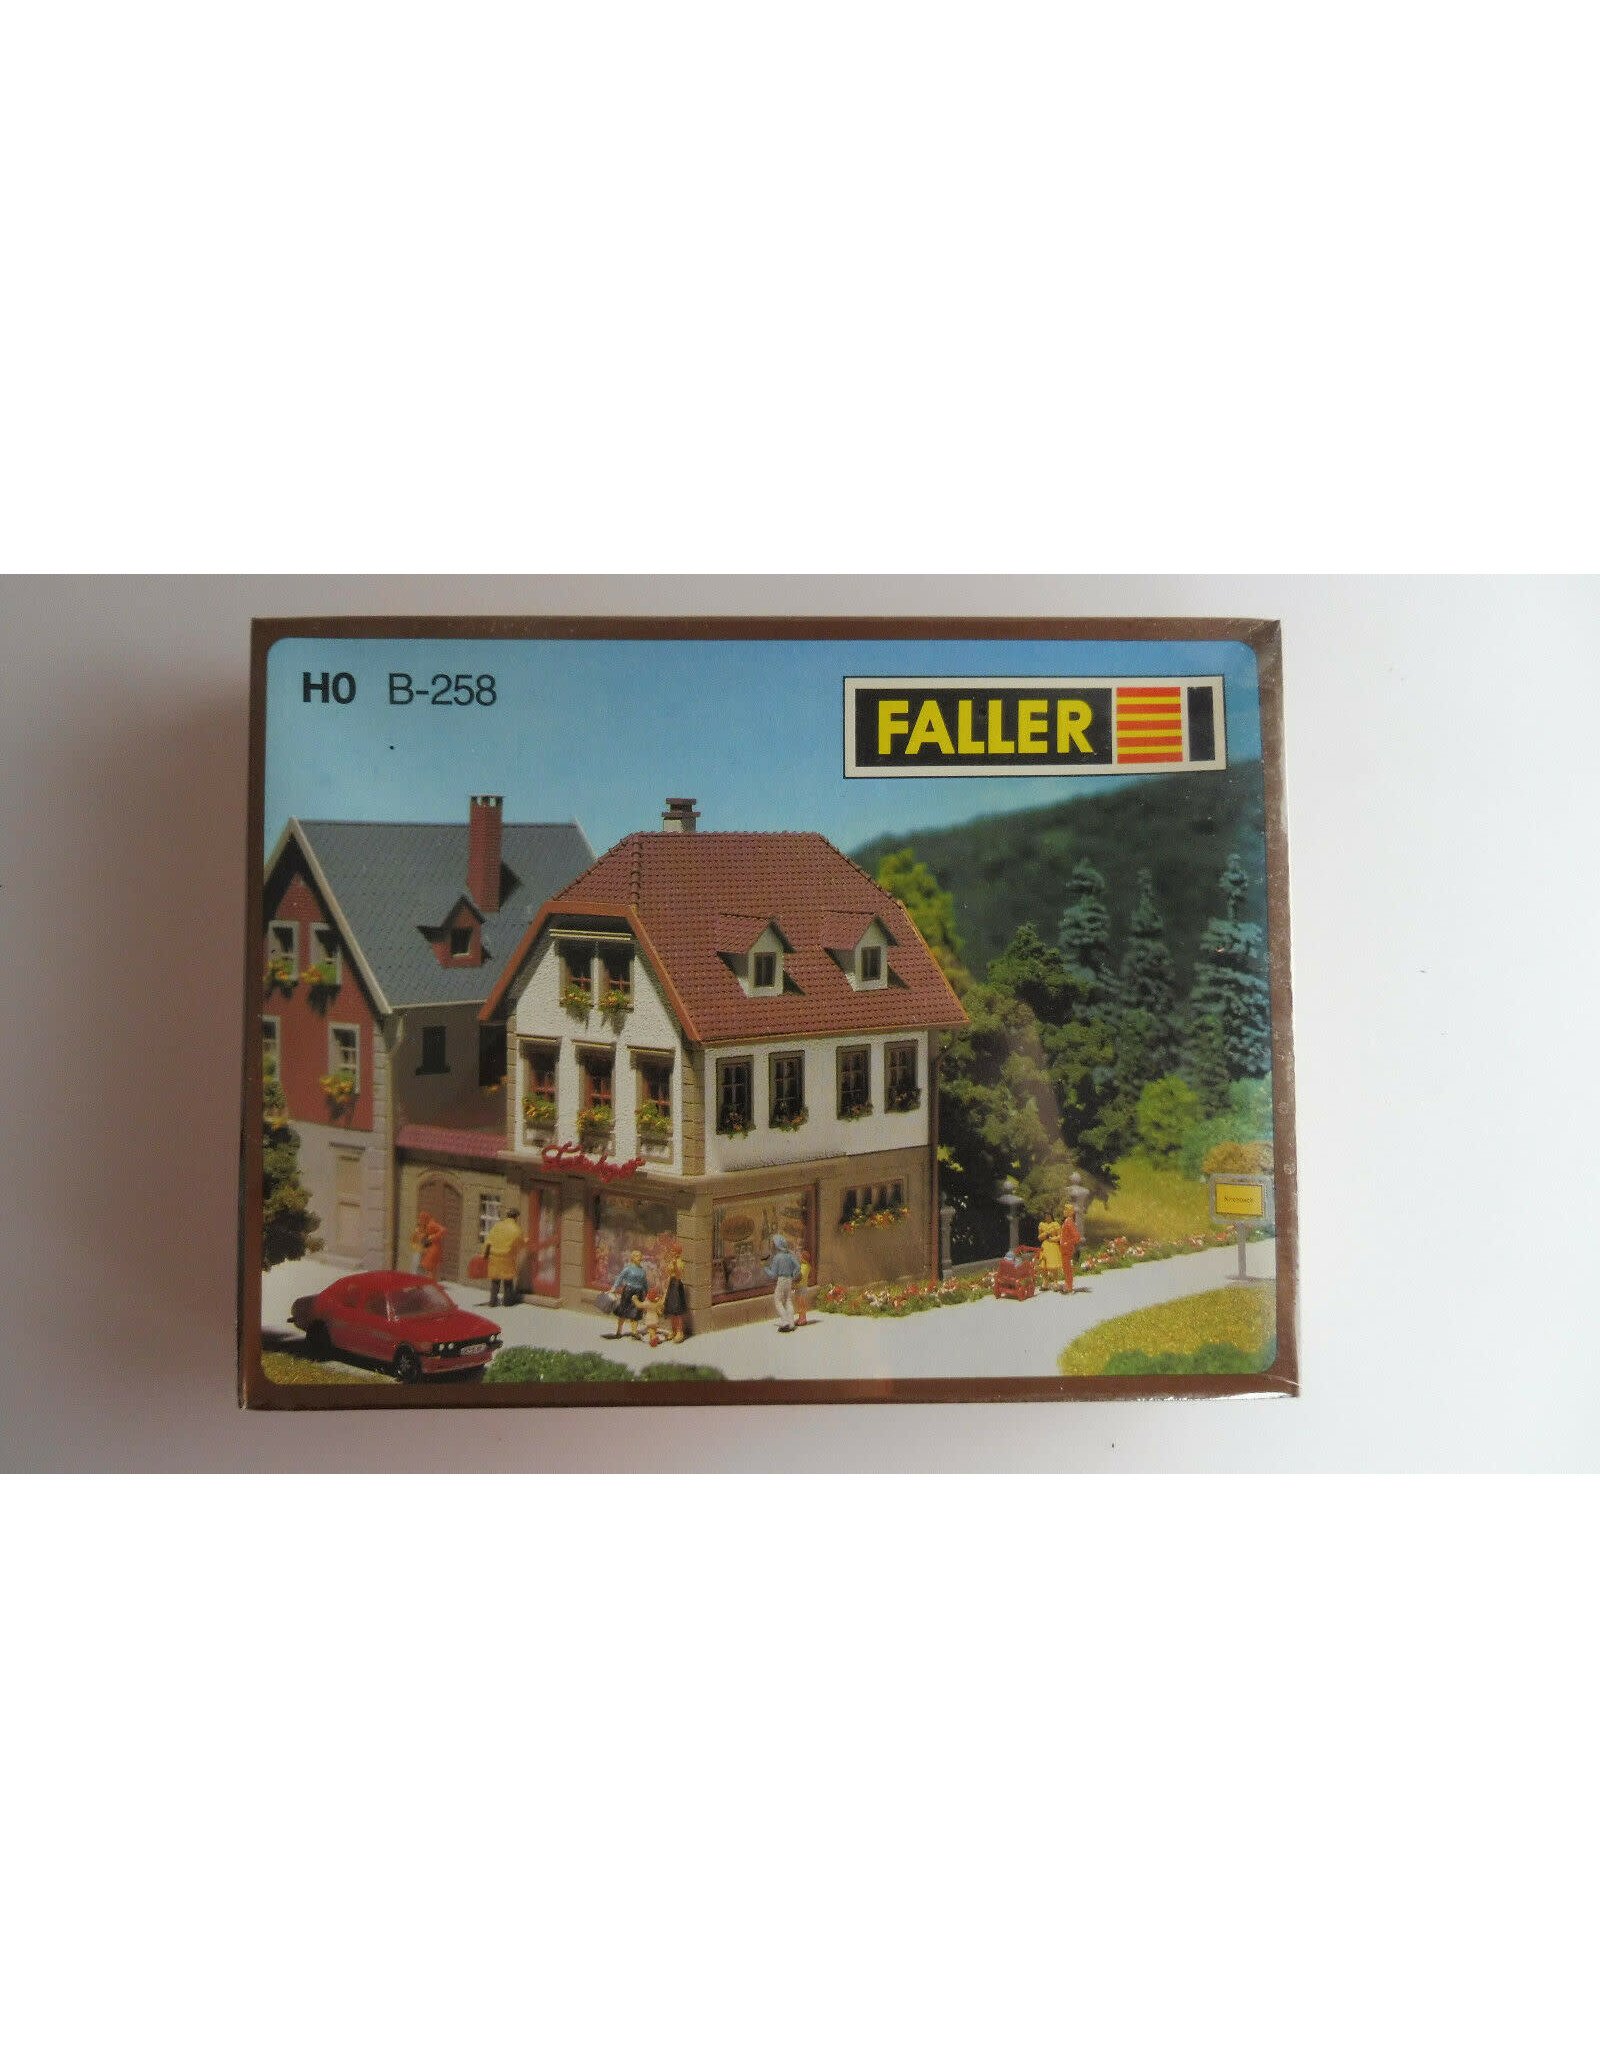 Faller Faller H0 B-258 Kit delicatessen Business